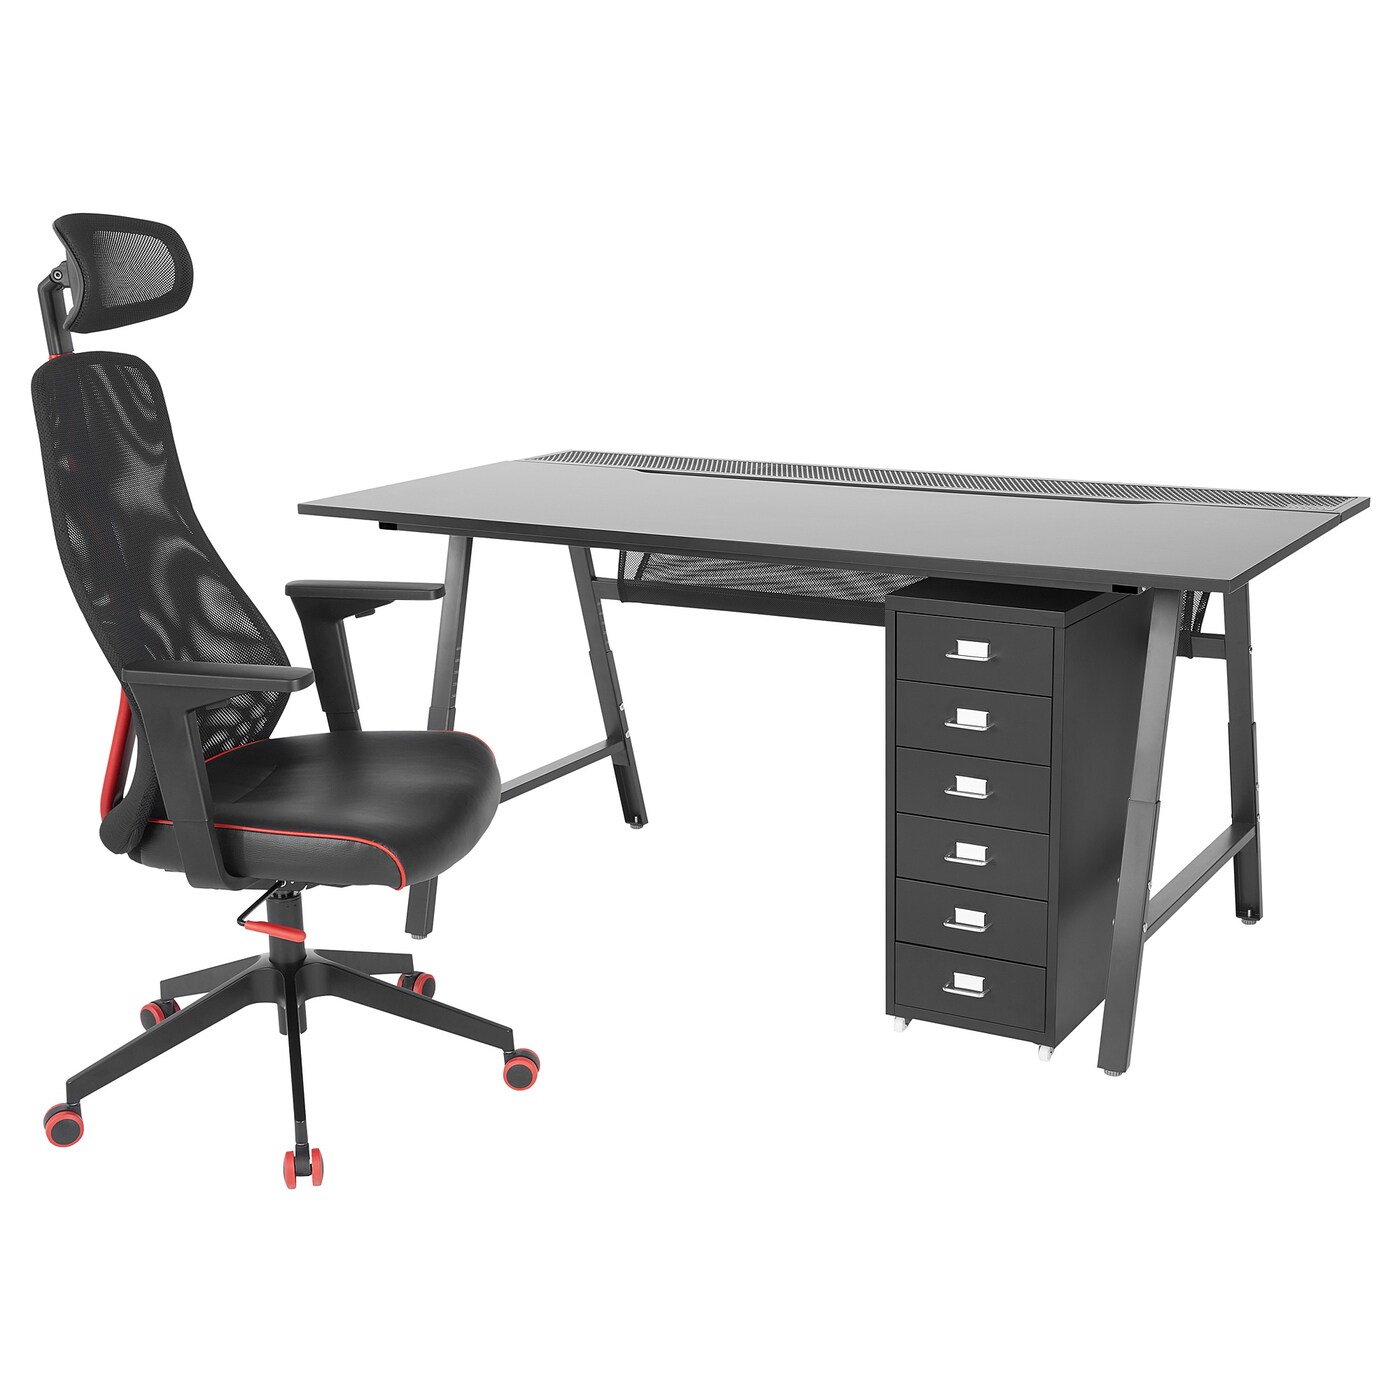 Игровой стол и стул с тумбой - IKEA UTESPELARE/MATCHSPEL, черный, 160х80х66-78 см, УТЕСПЕЛАРЕ/МАТЧСПЕЛ ИКЕА